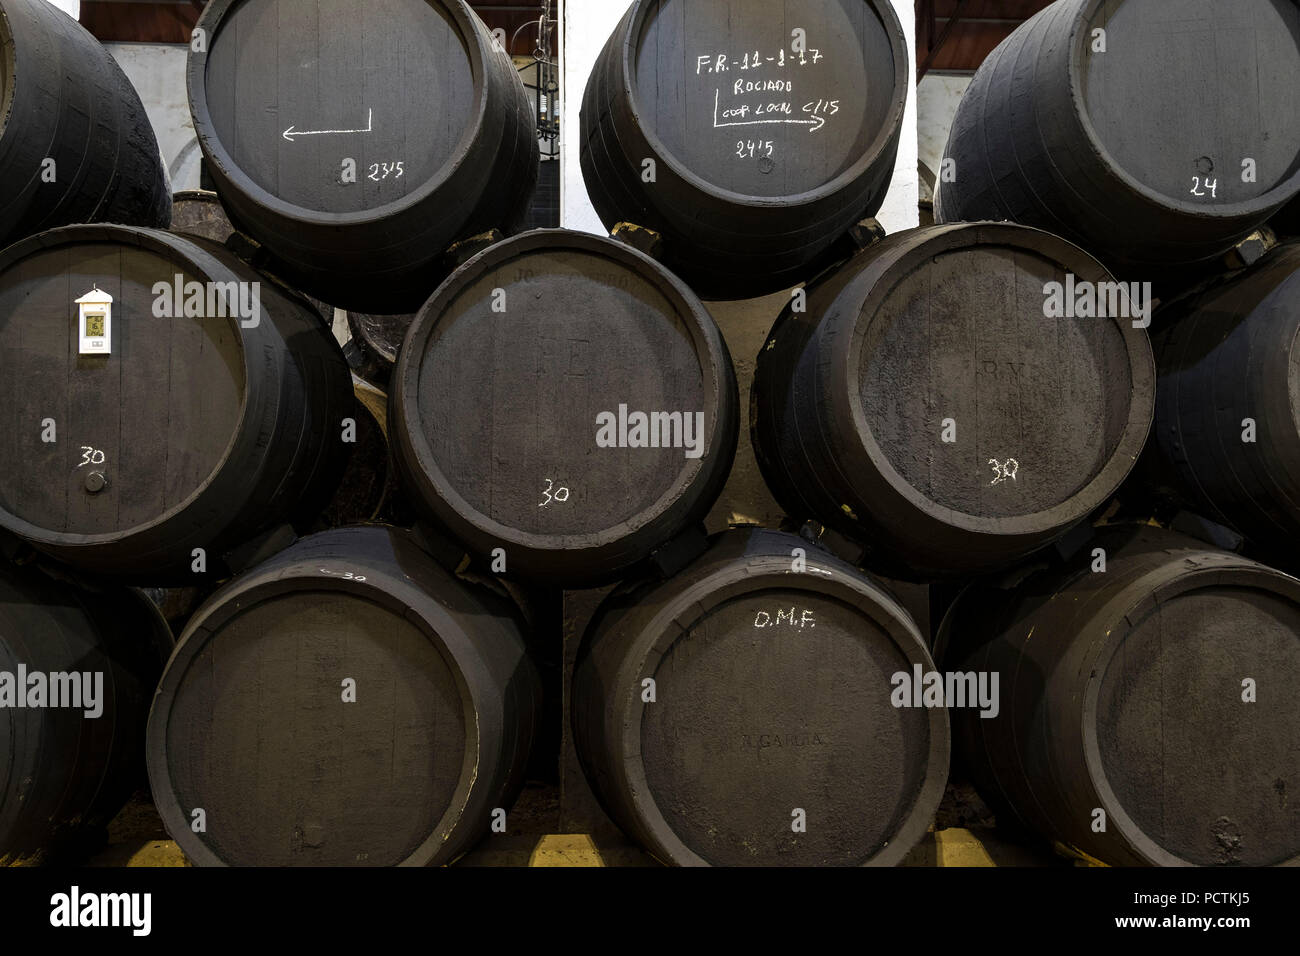 La Delgado cantine hanno esisteva sin dal 1874 nella città andalusa di Puente Genil. Produce vini dolci, alcuni dei migliori in Spagna Foto Stock